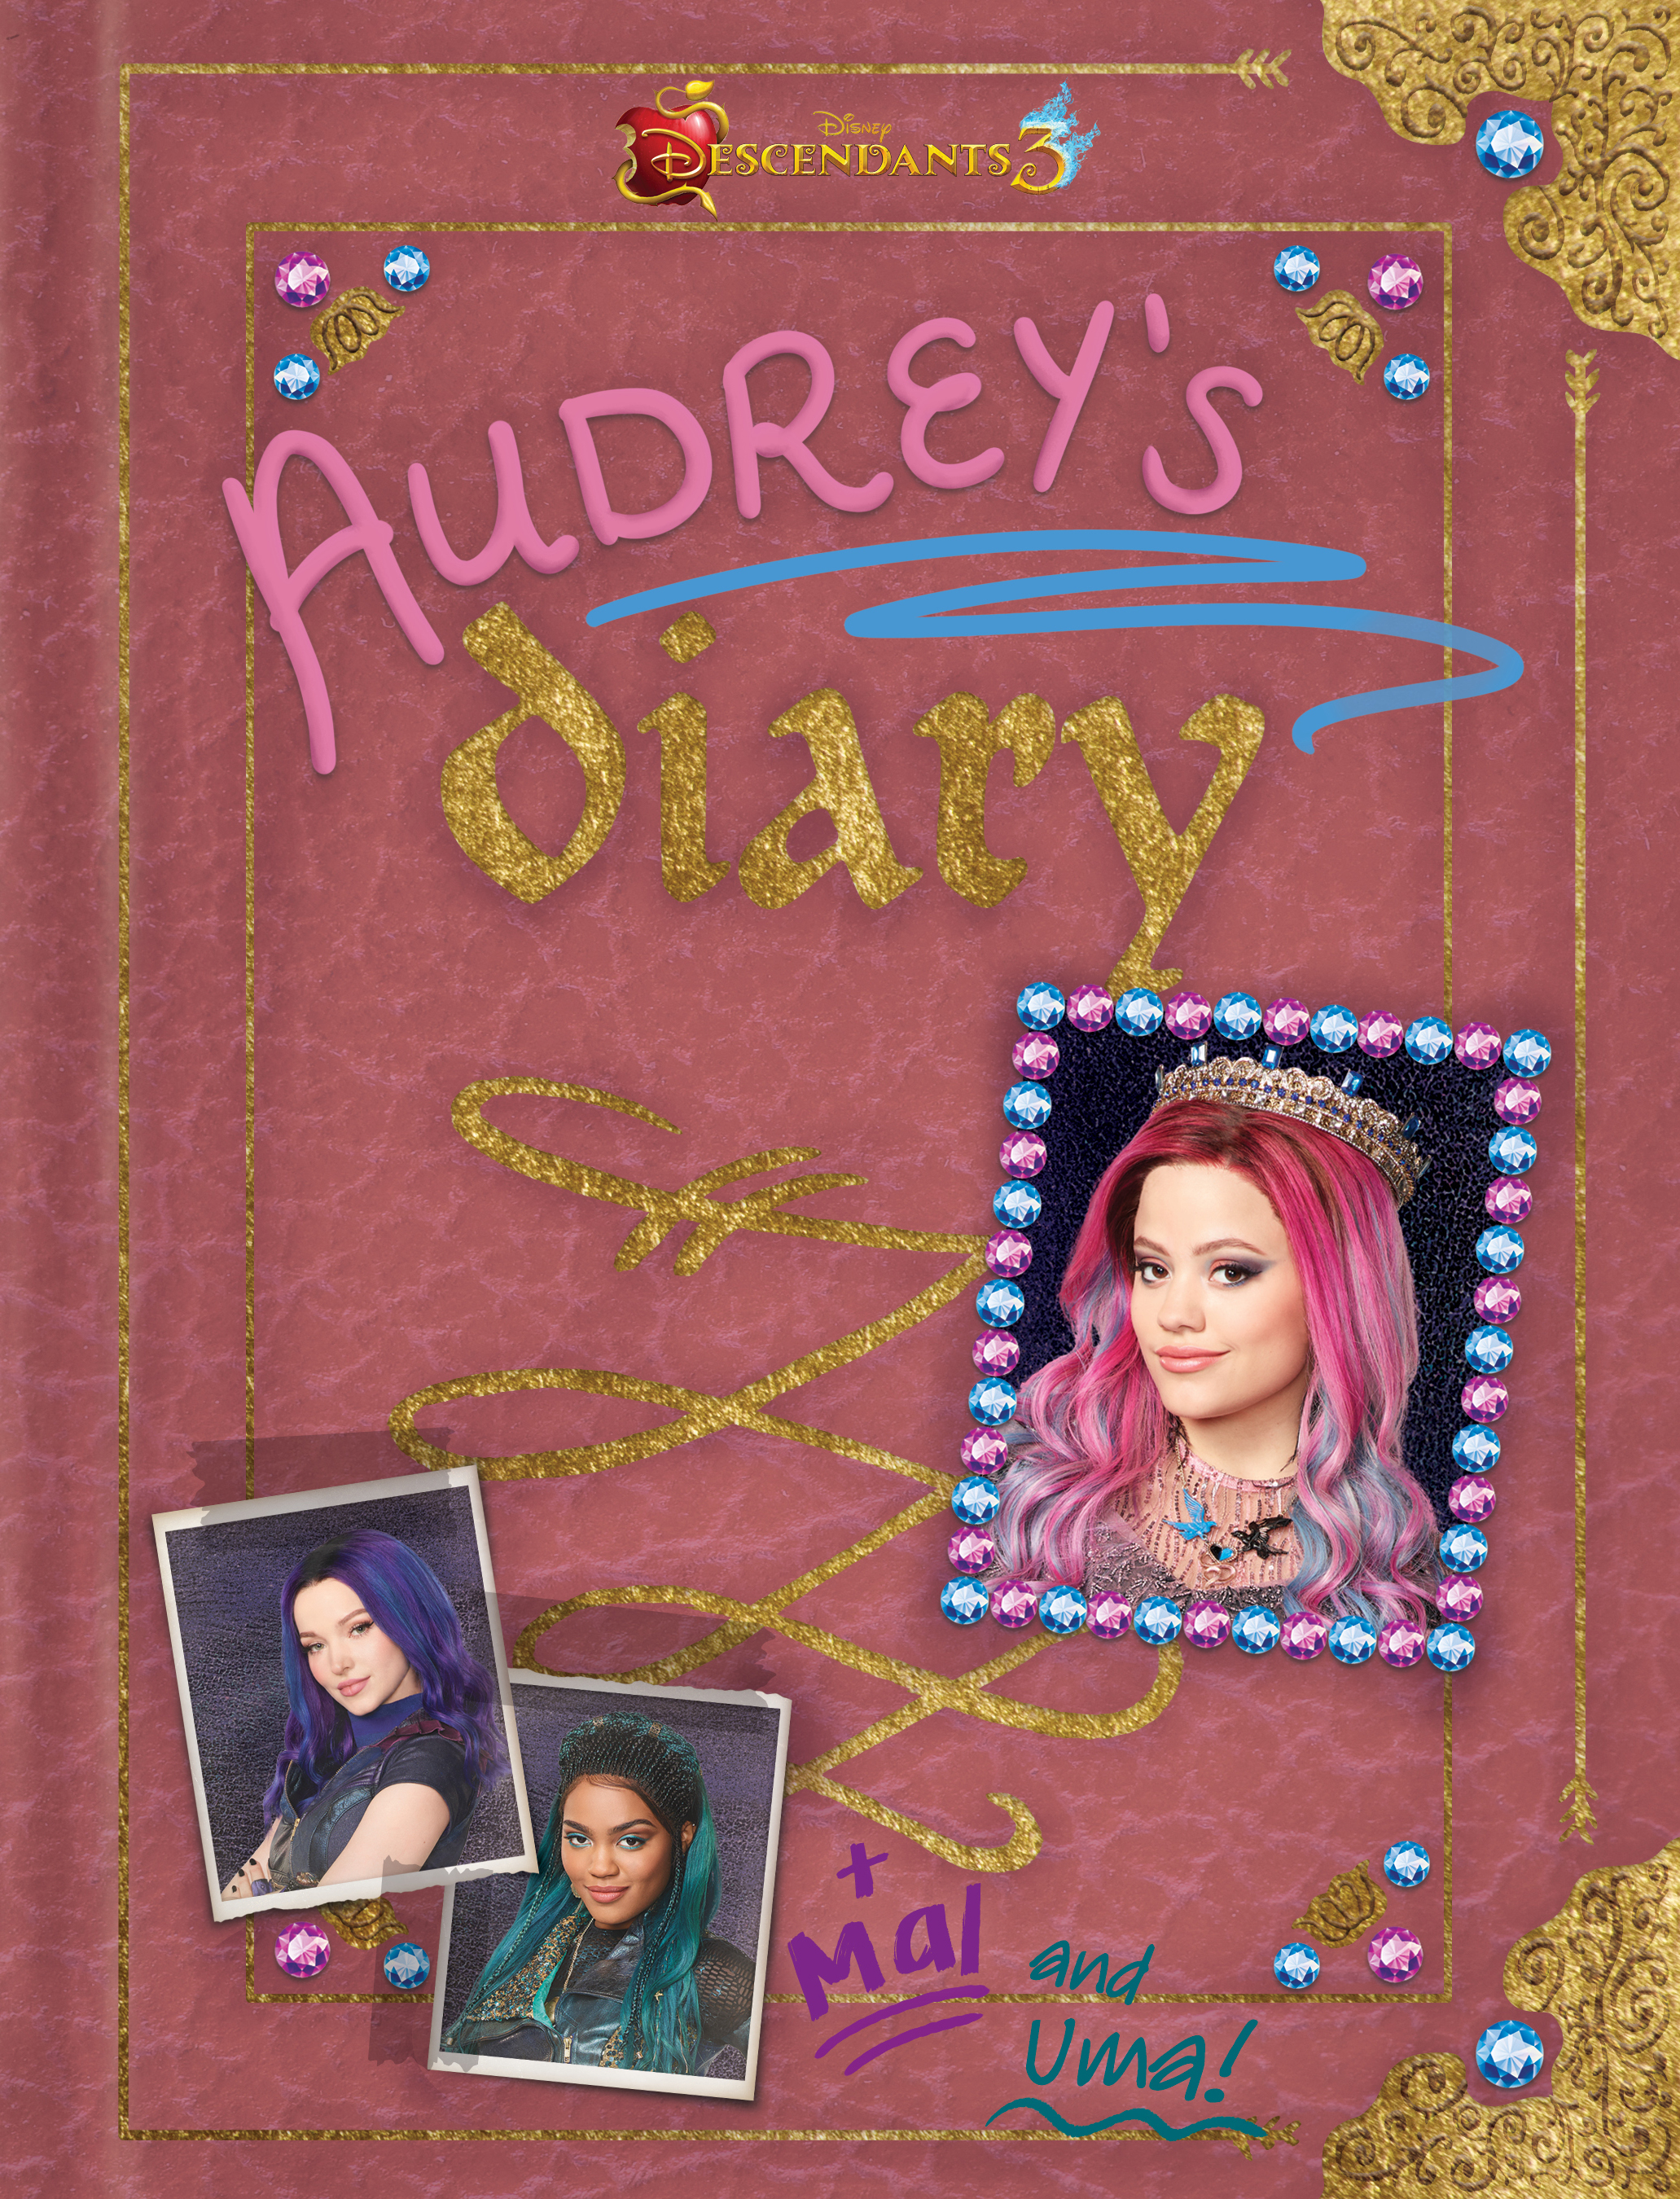 Descendants 3: Audrey's Diary by Disney Book Group - Descendants